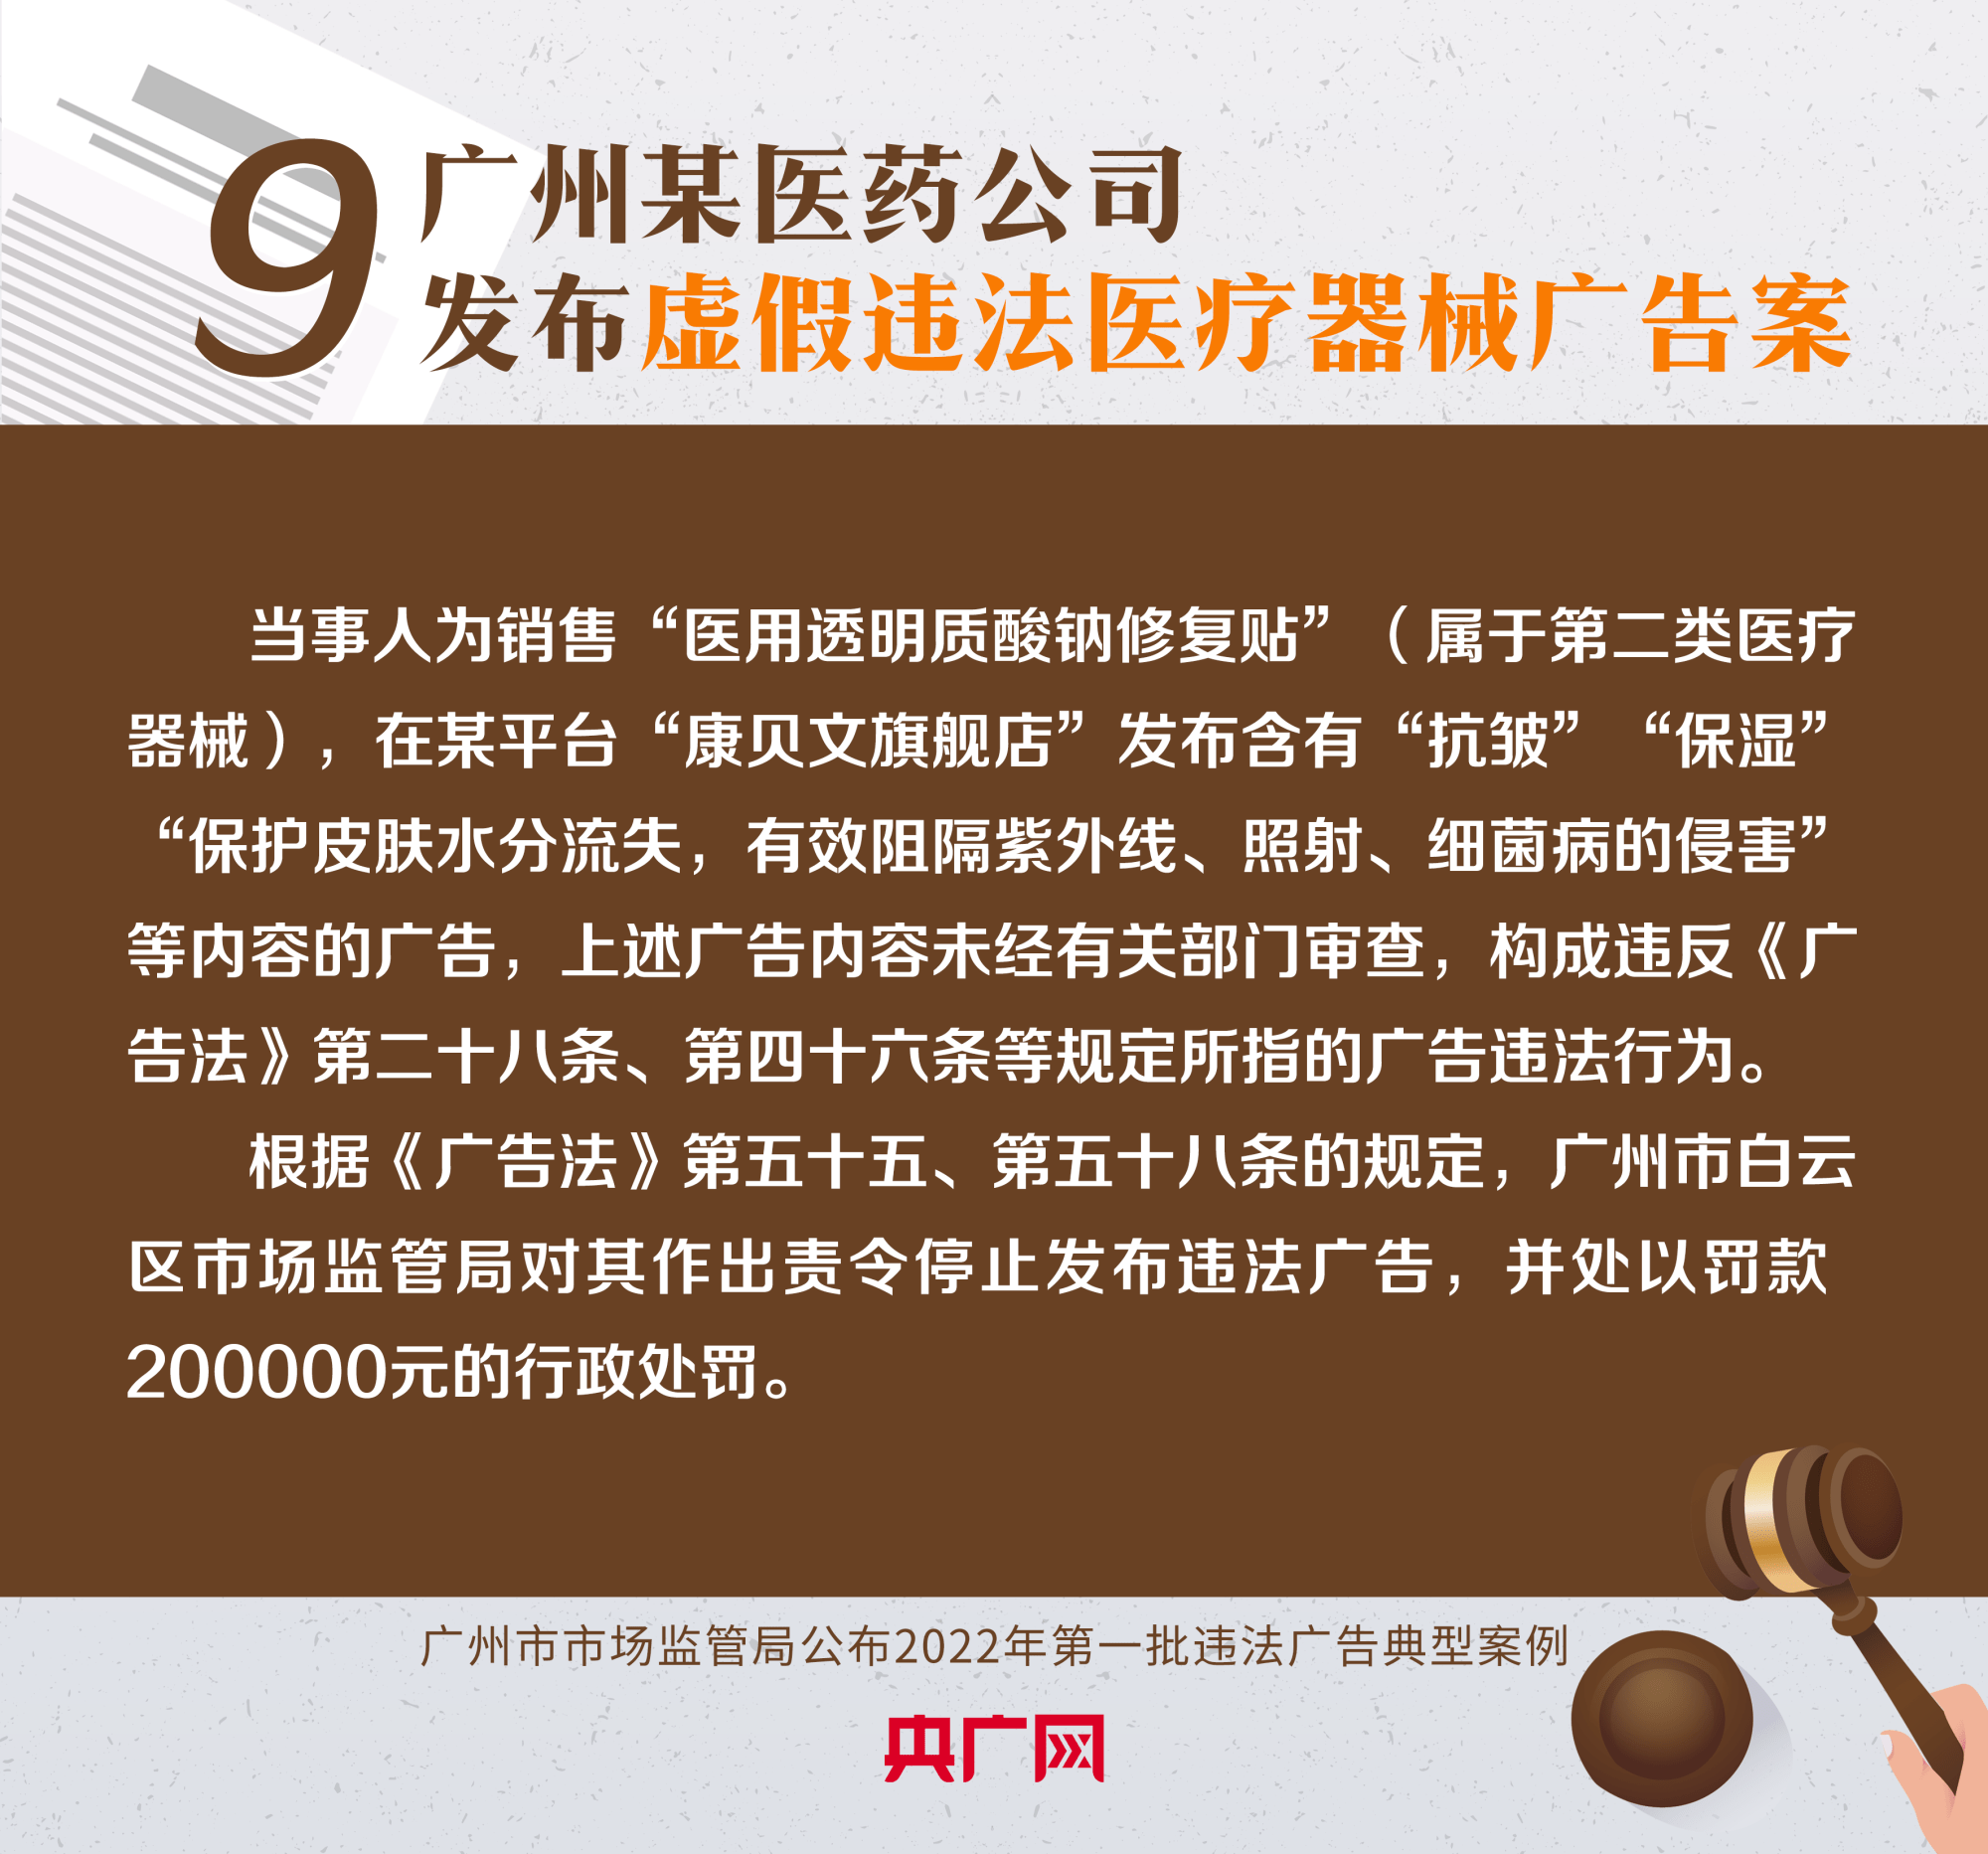 图解广州公布今年首批违法广告典型案例